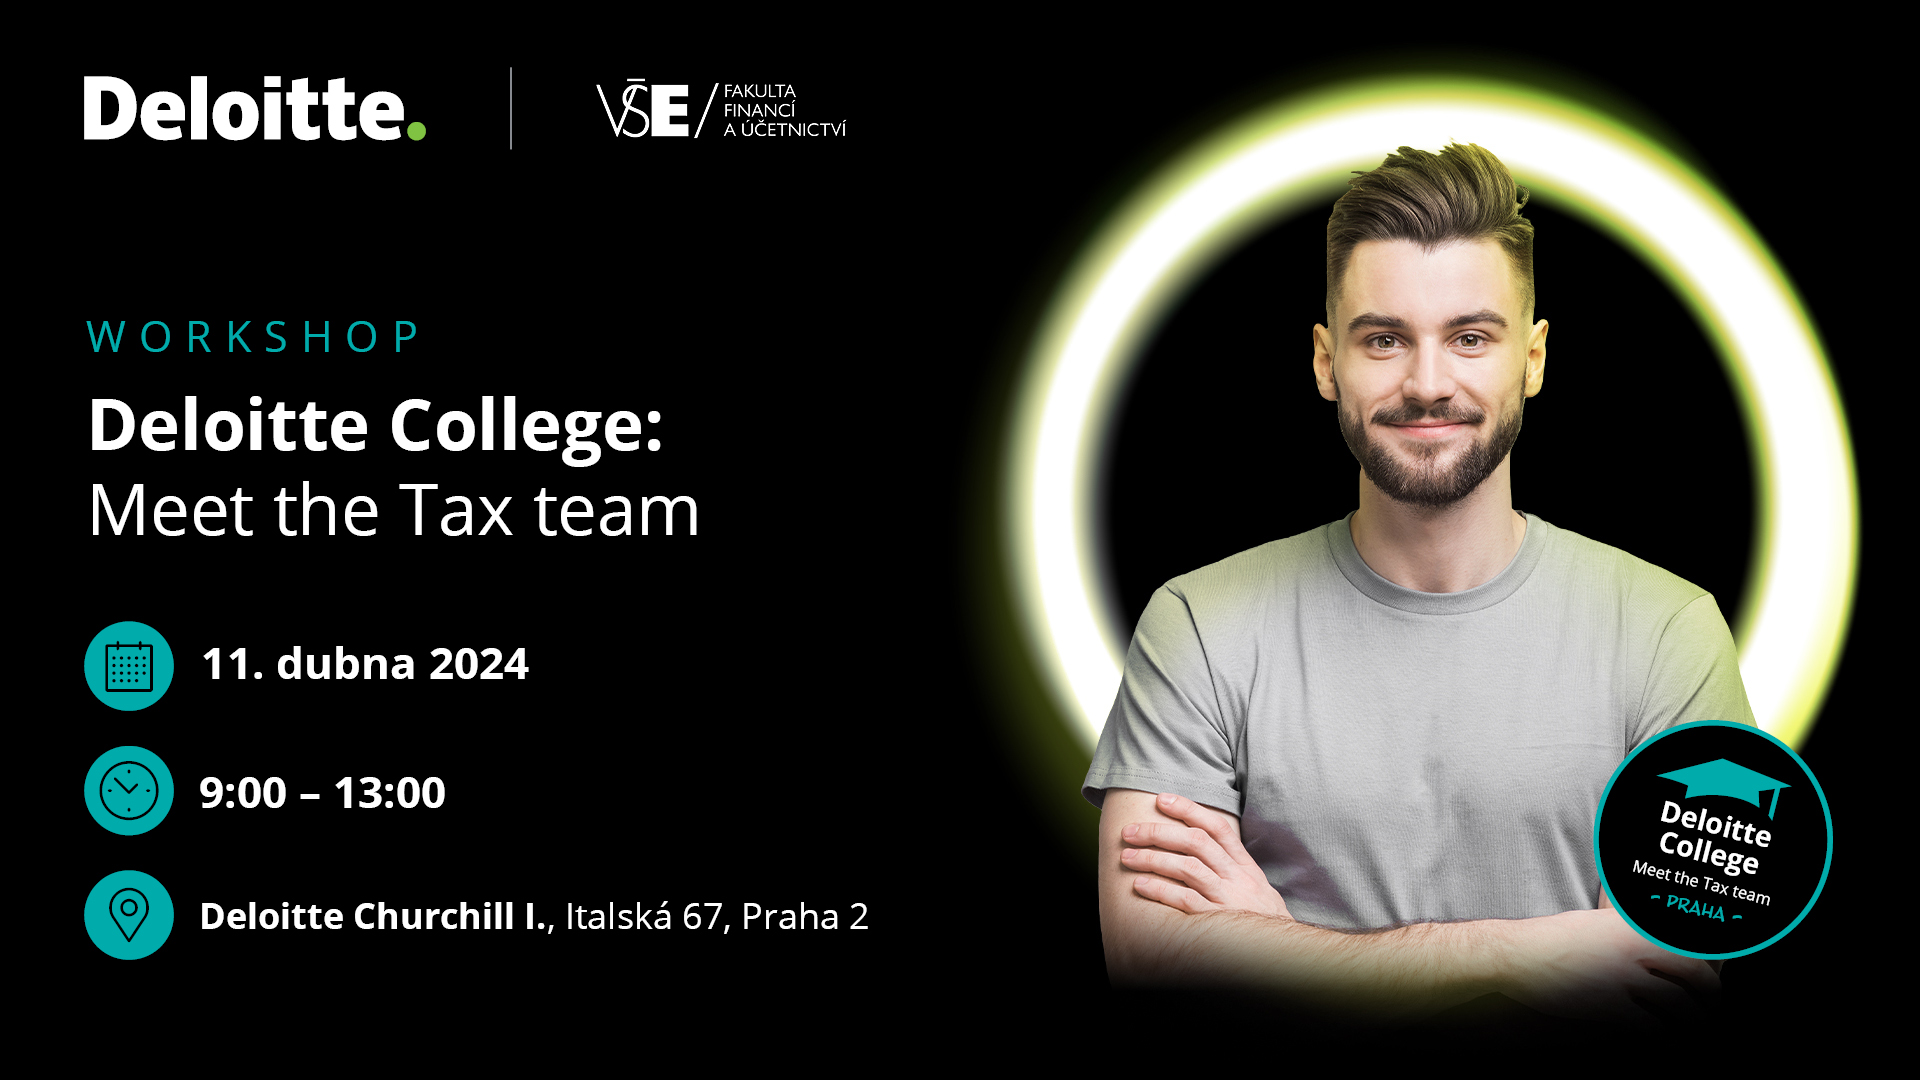 Deloitte College: Meet the Tax team | VŠE